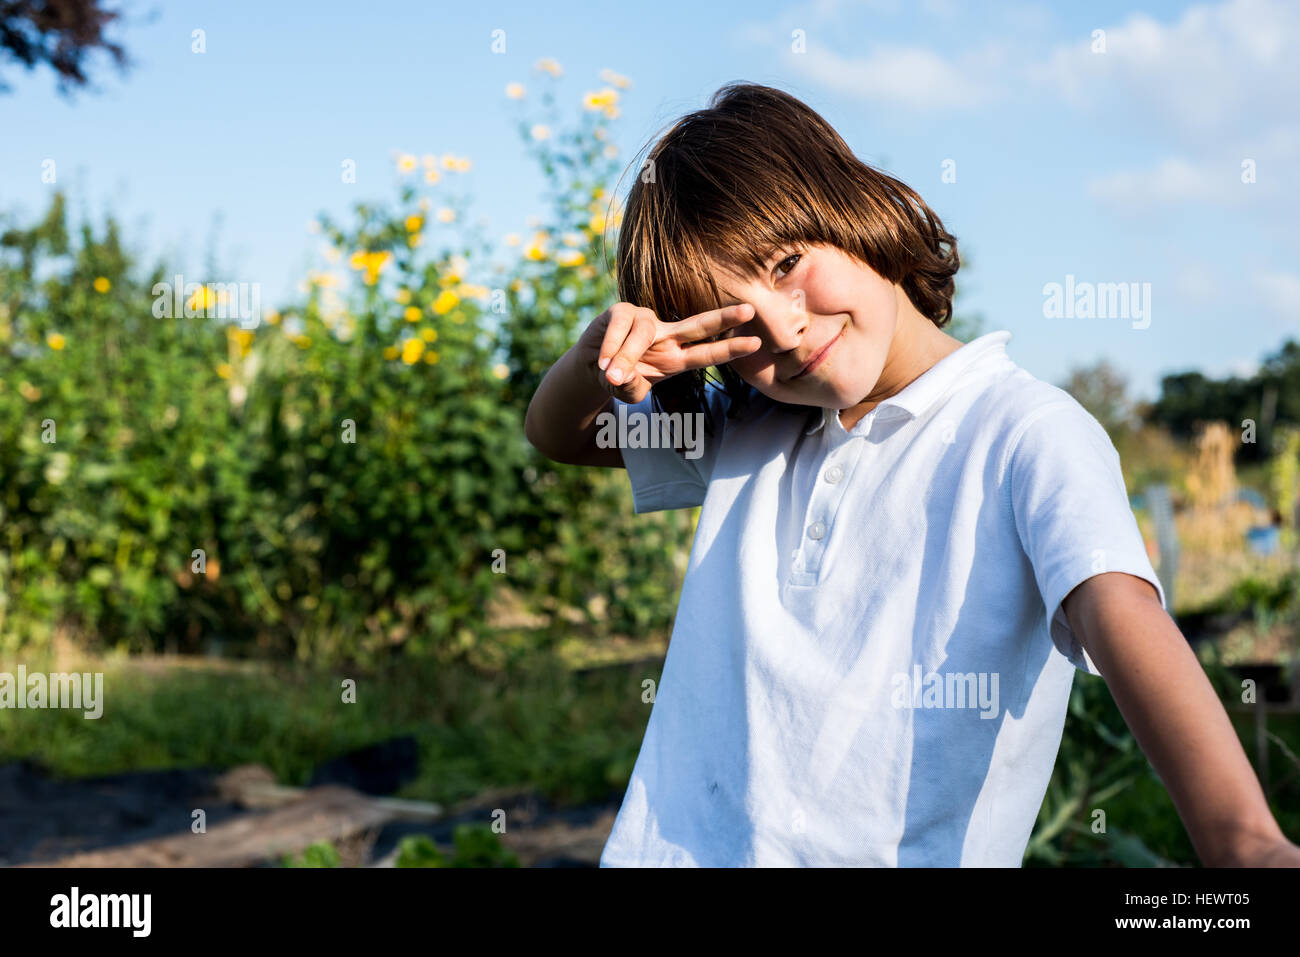 Ritratto di felice ragazzo facendo segno di pace gesto a mano nel giardino rurale Foto Stock